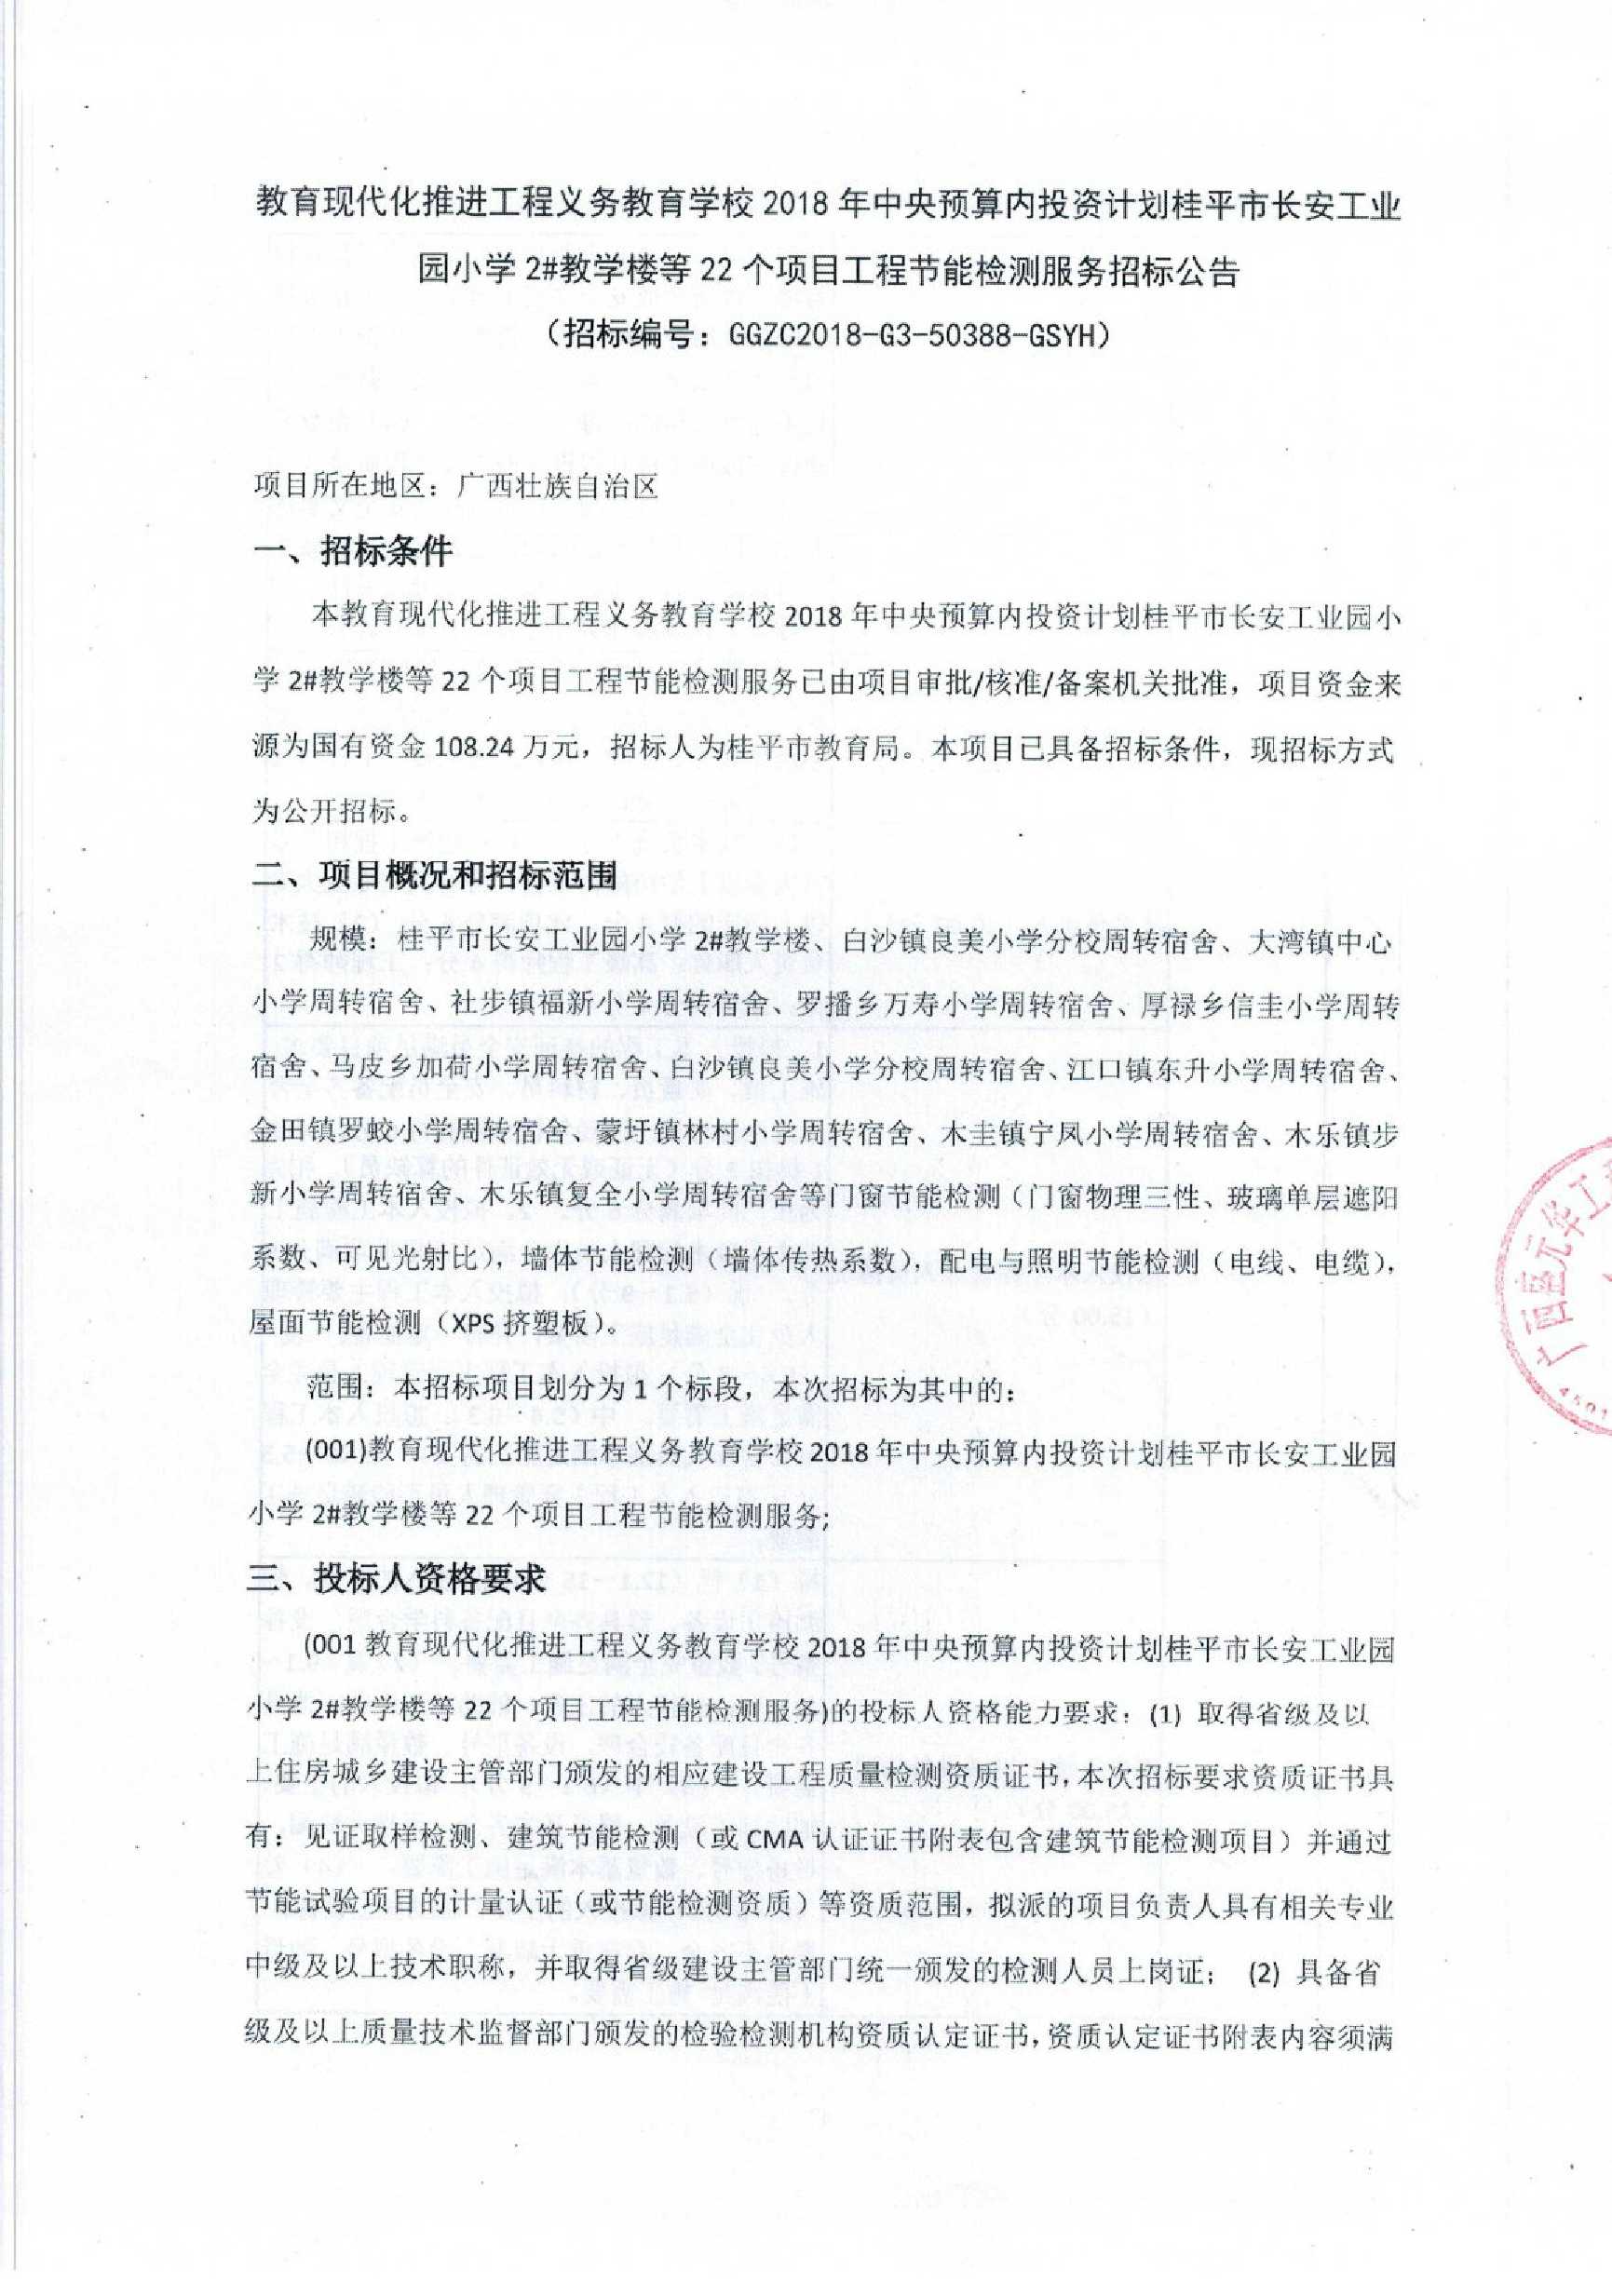 教育学校2018年中央预算内投资计划桂平市长